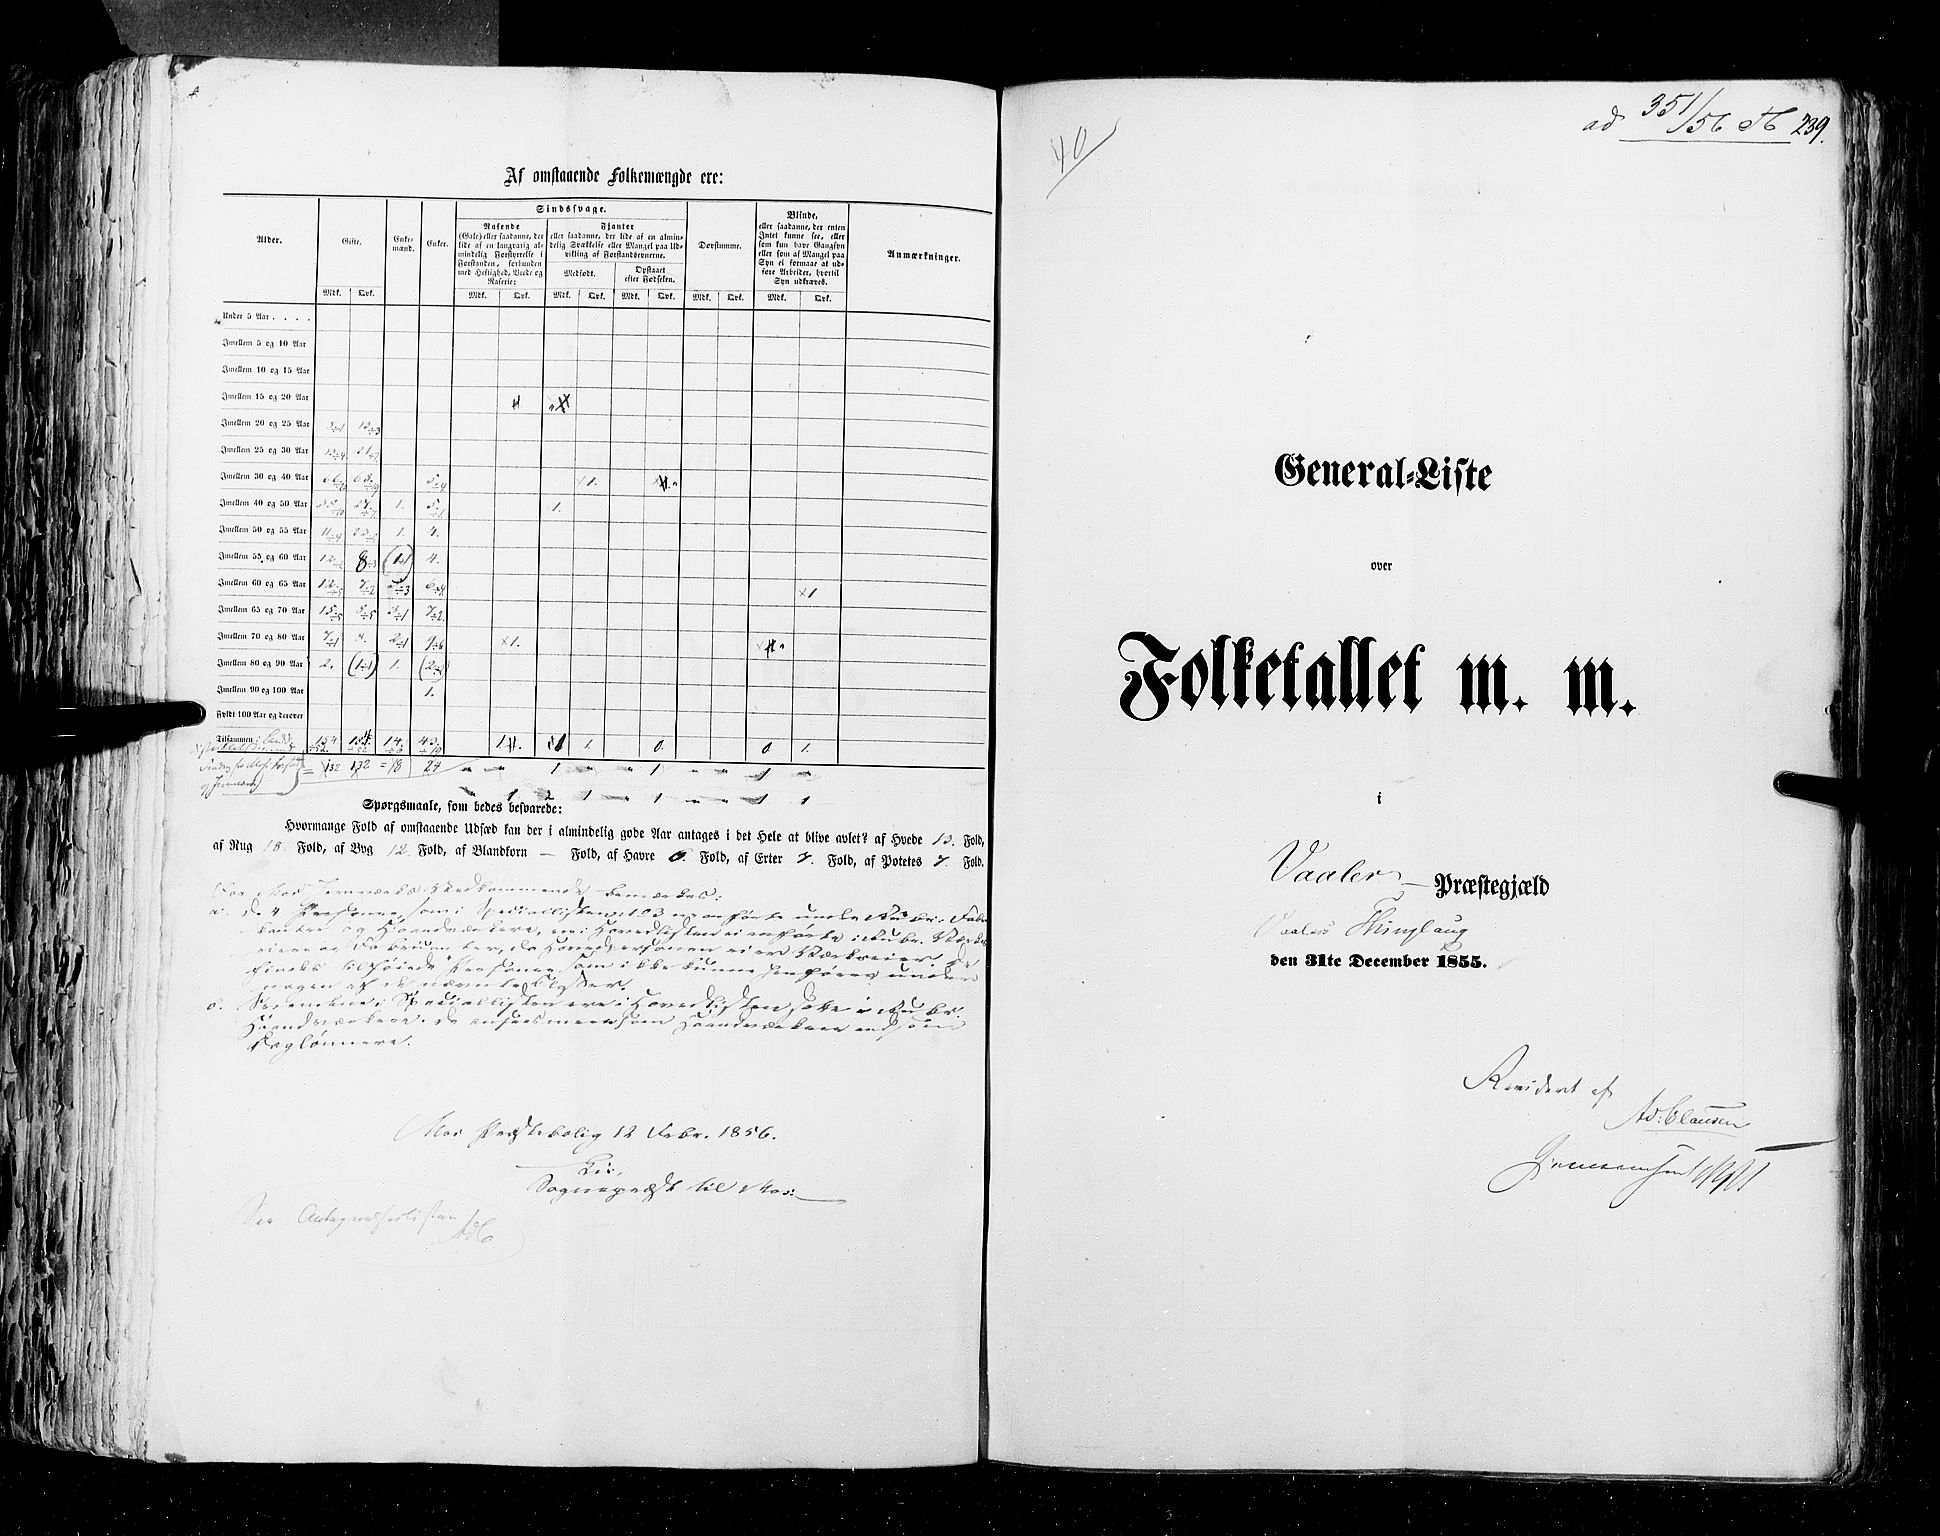 RA, Census 1855, vol. 1: Akershus amt, Smålenenes amt og Hedemarken amt, 1855, p. 239